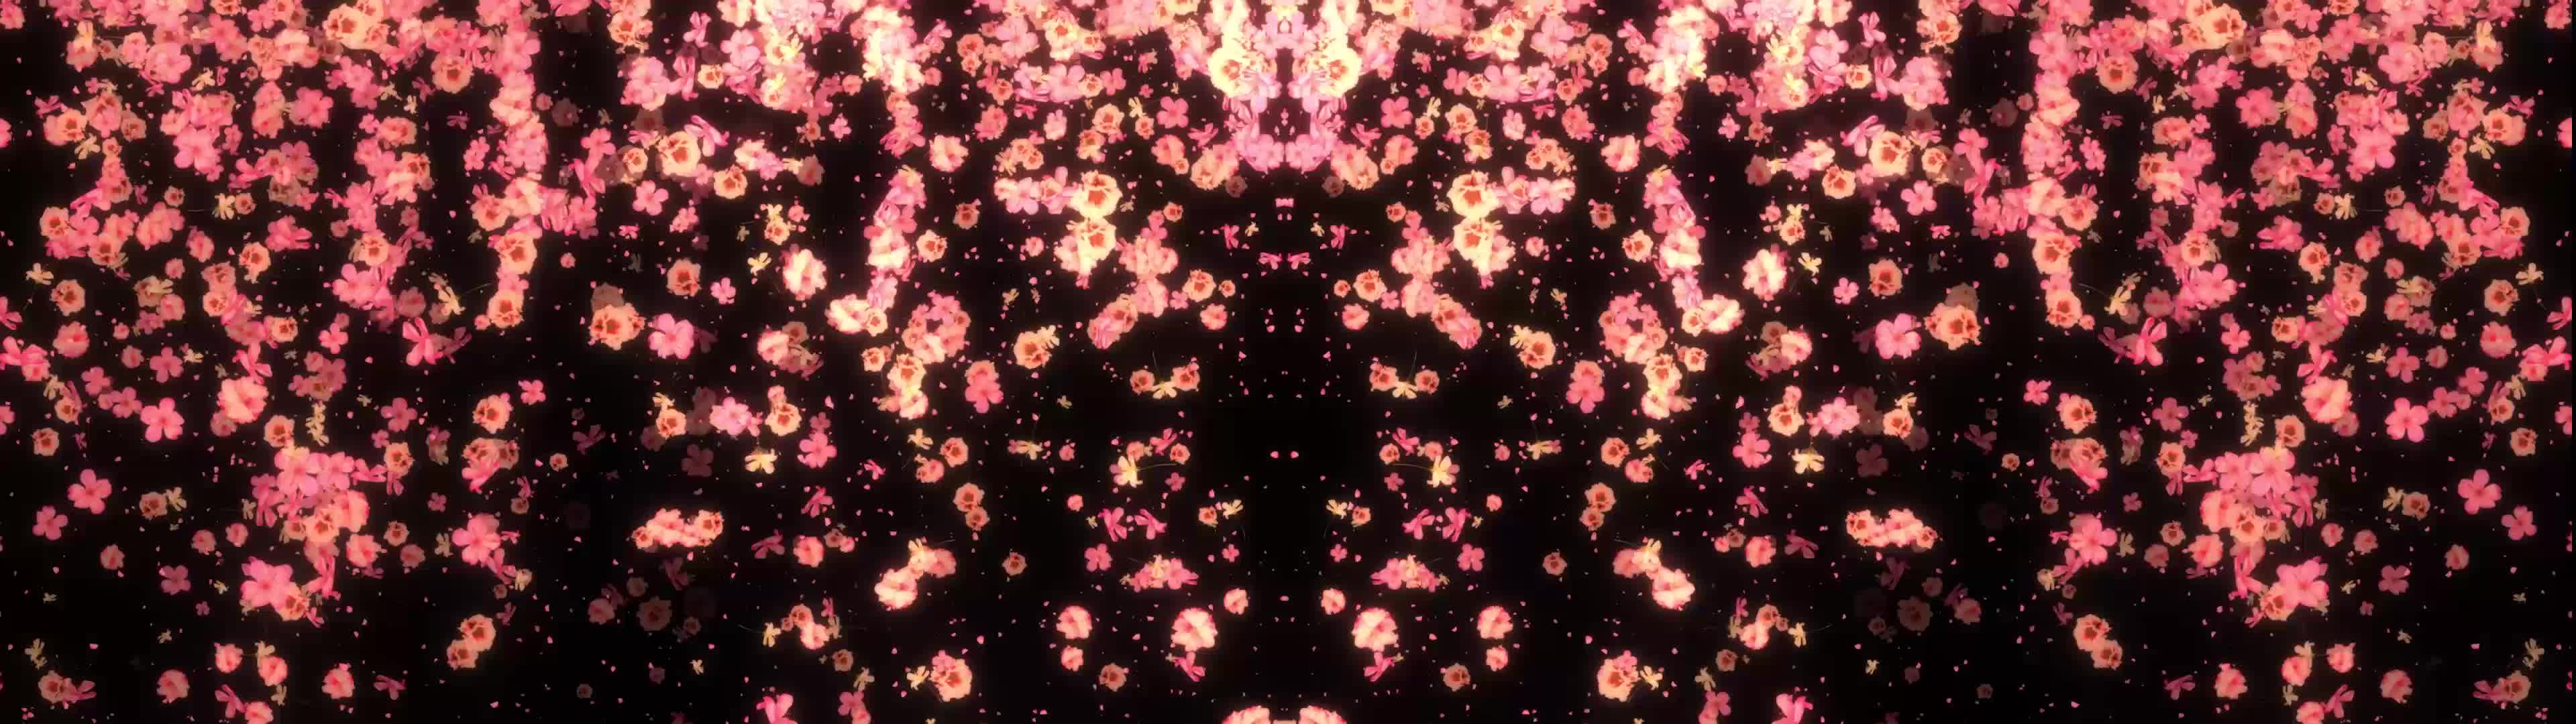 花朵飘落动画宽屏led视频背景